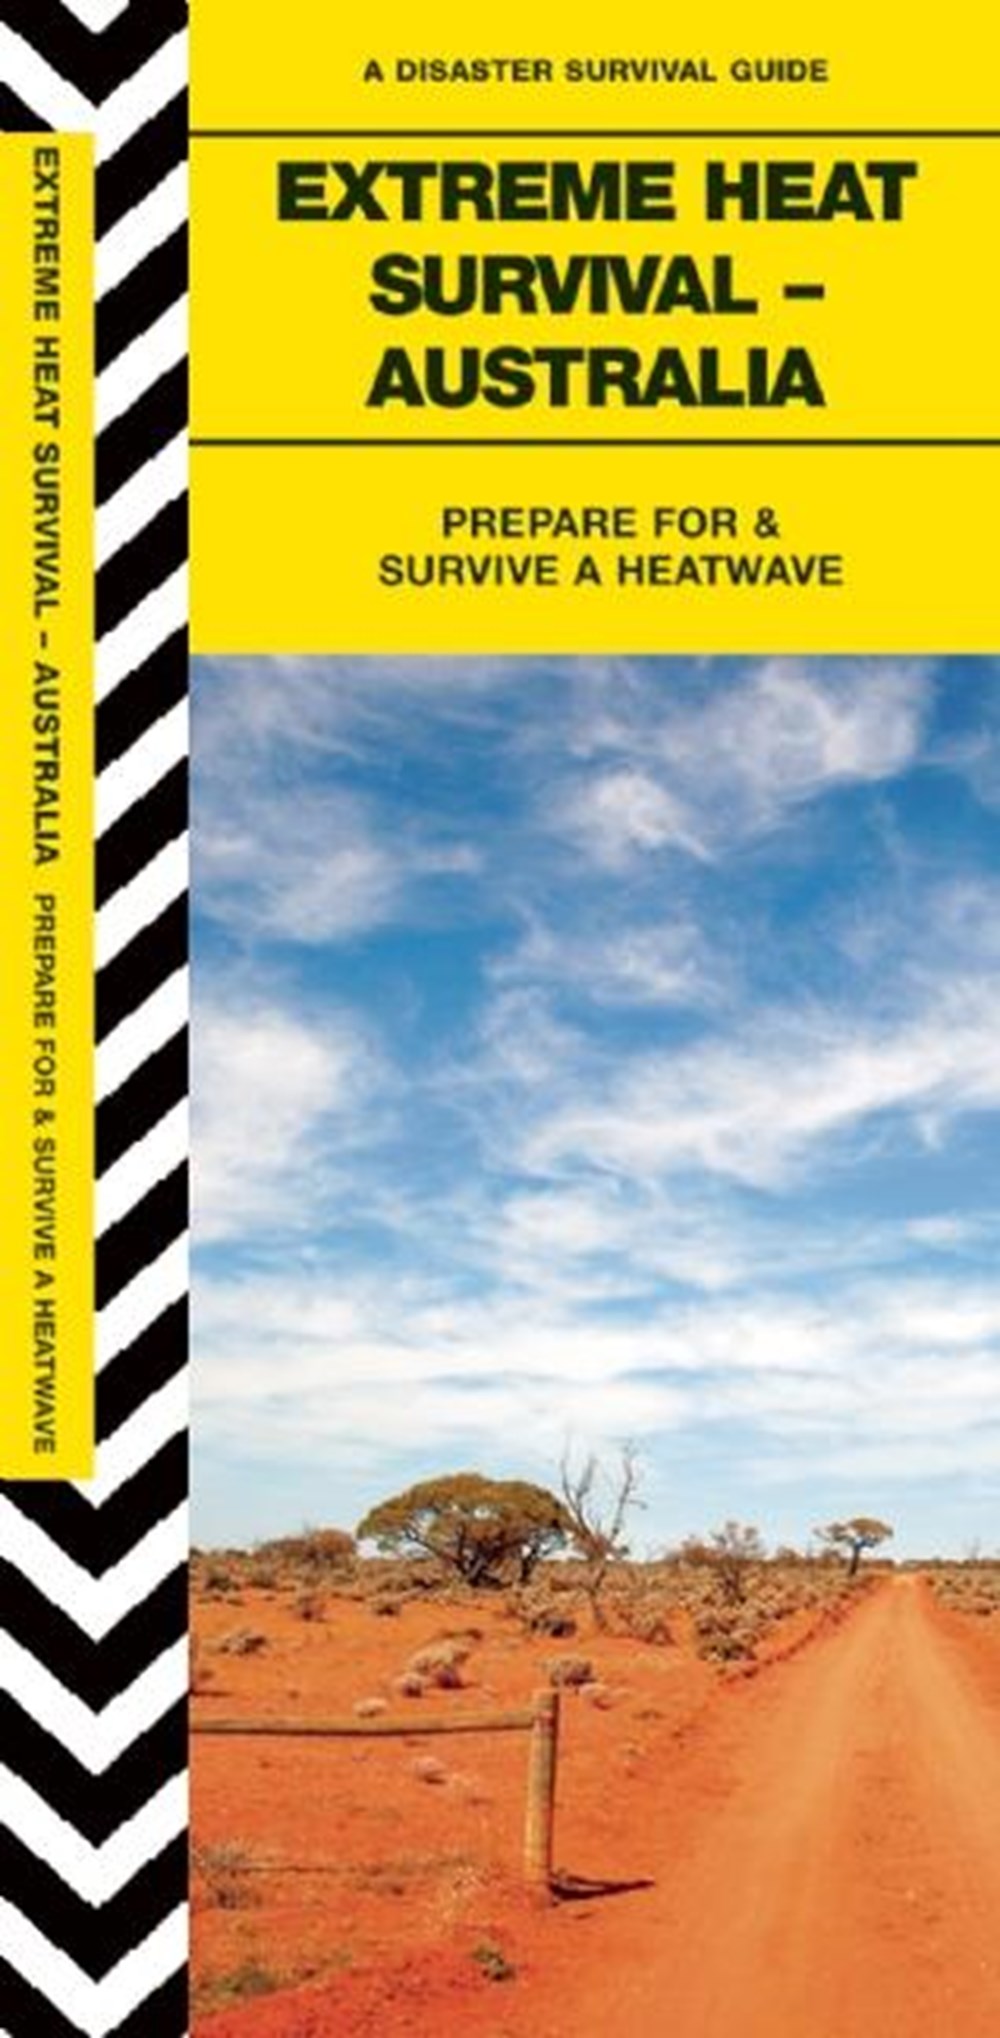 Extreme Heat Survival - Australia: Prepare for & Survive a Heatwave